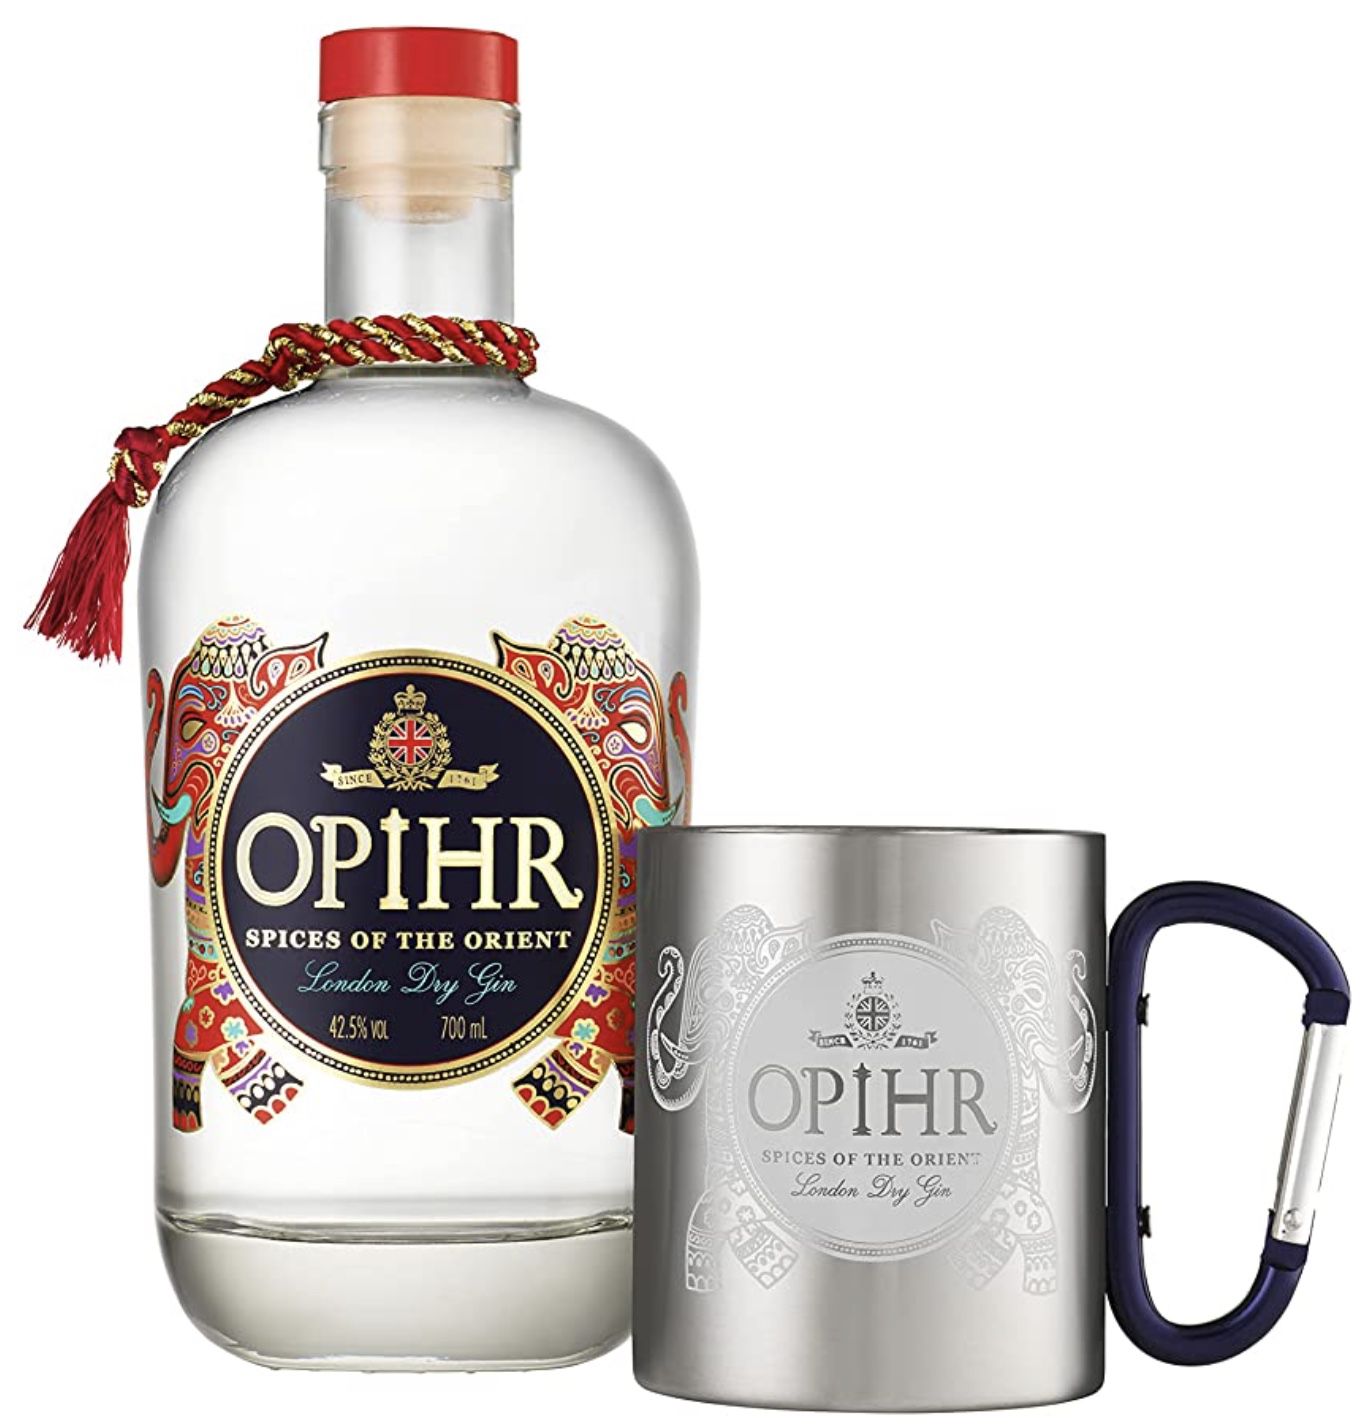 Opihr Oriental Spiced Gin Geschenk Set mit Becher für 19,78€ (statt 30€)   Prime